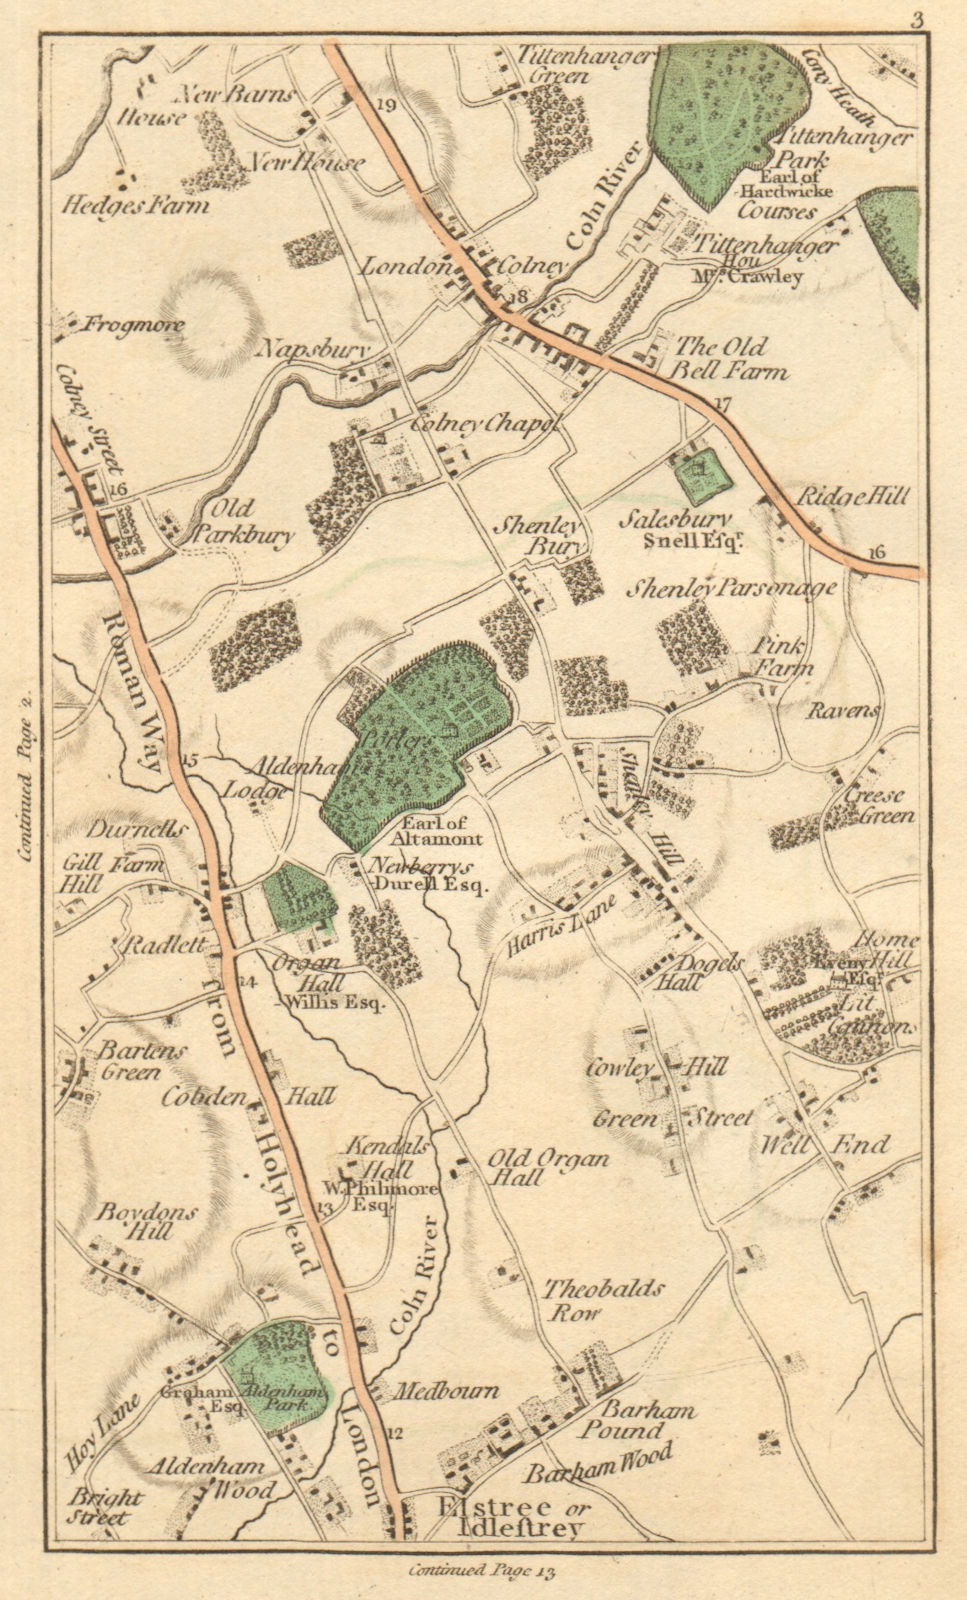 Associate Product BOREHAMWOOD. Elstree,London Colney Street,St Albans,Radlett,Shenley 1811 map